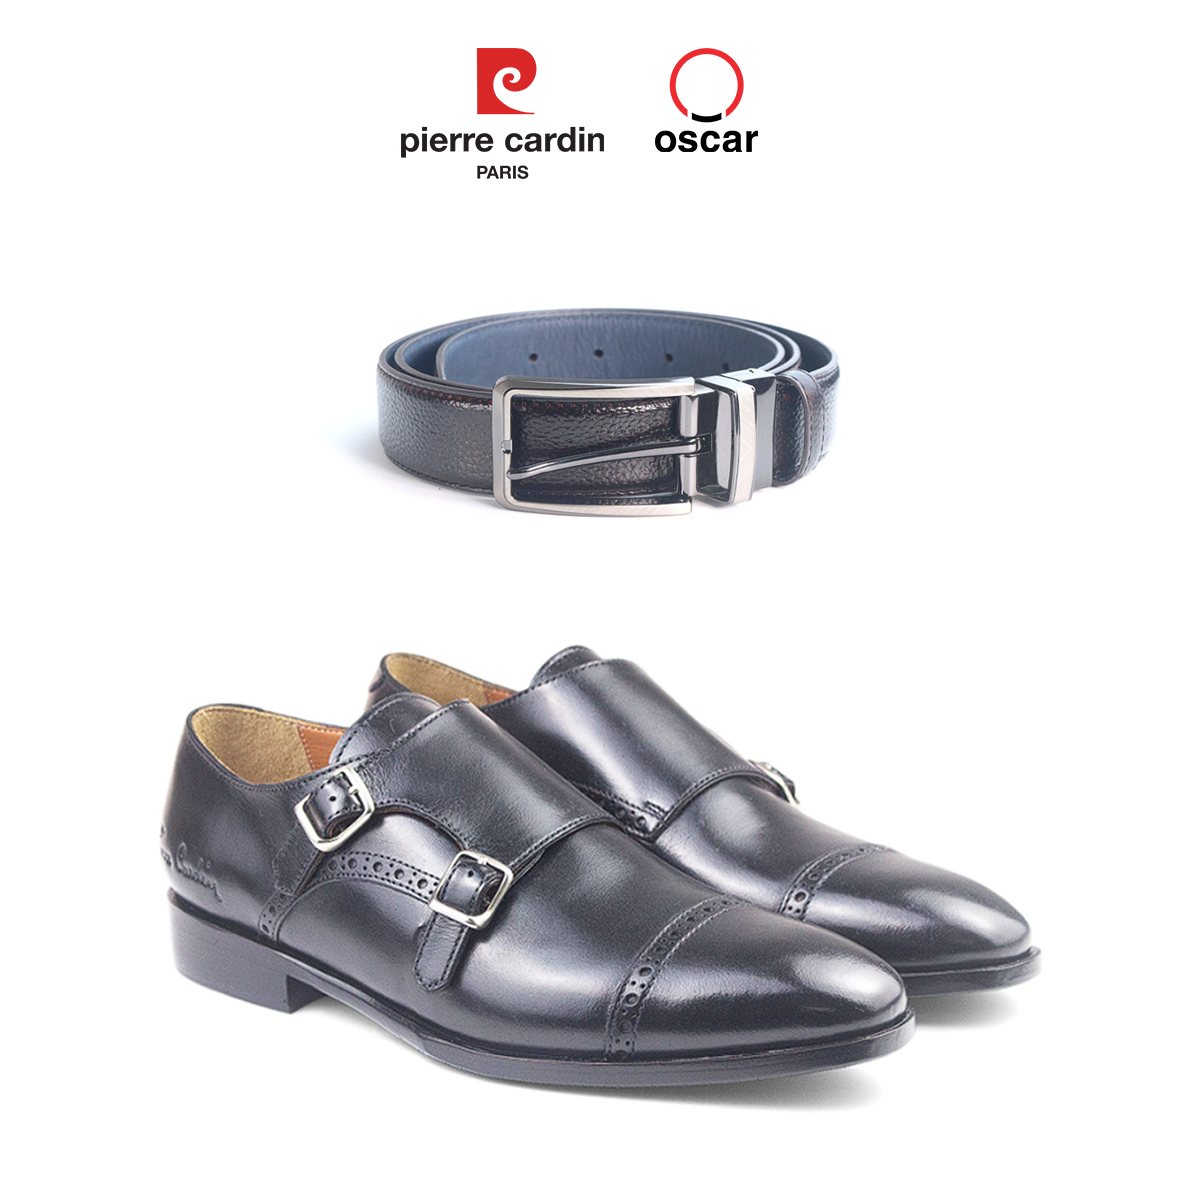 Gợi ý phối đồ giữa mẫu thắt lưng khóa kim loại Oscar Fashion - OCMBLPH 035 và mẫu giày Double Monstrap Cao Cấp Pierre Cardin - PCMFWLH 363.